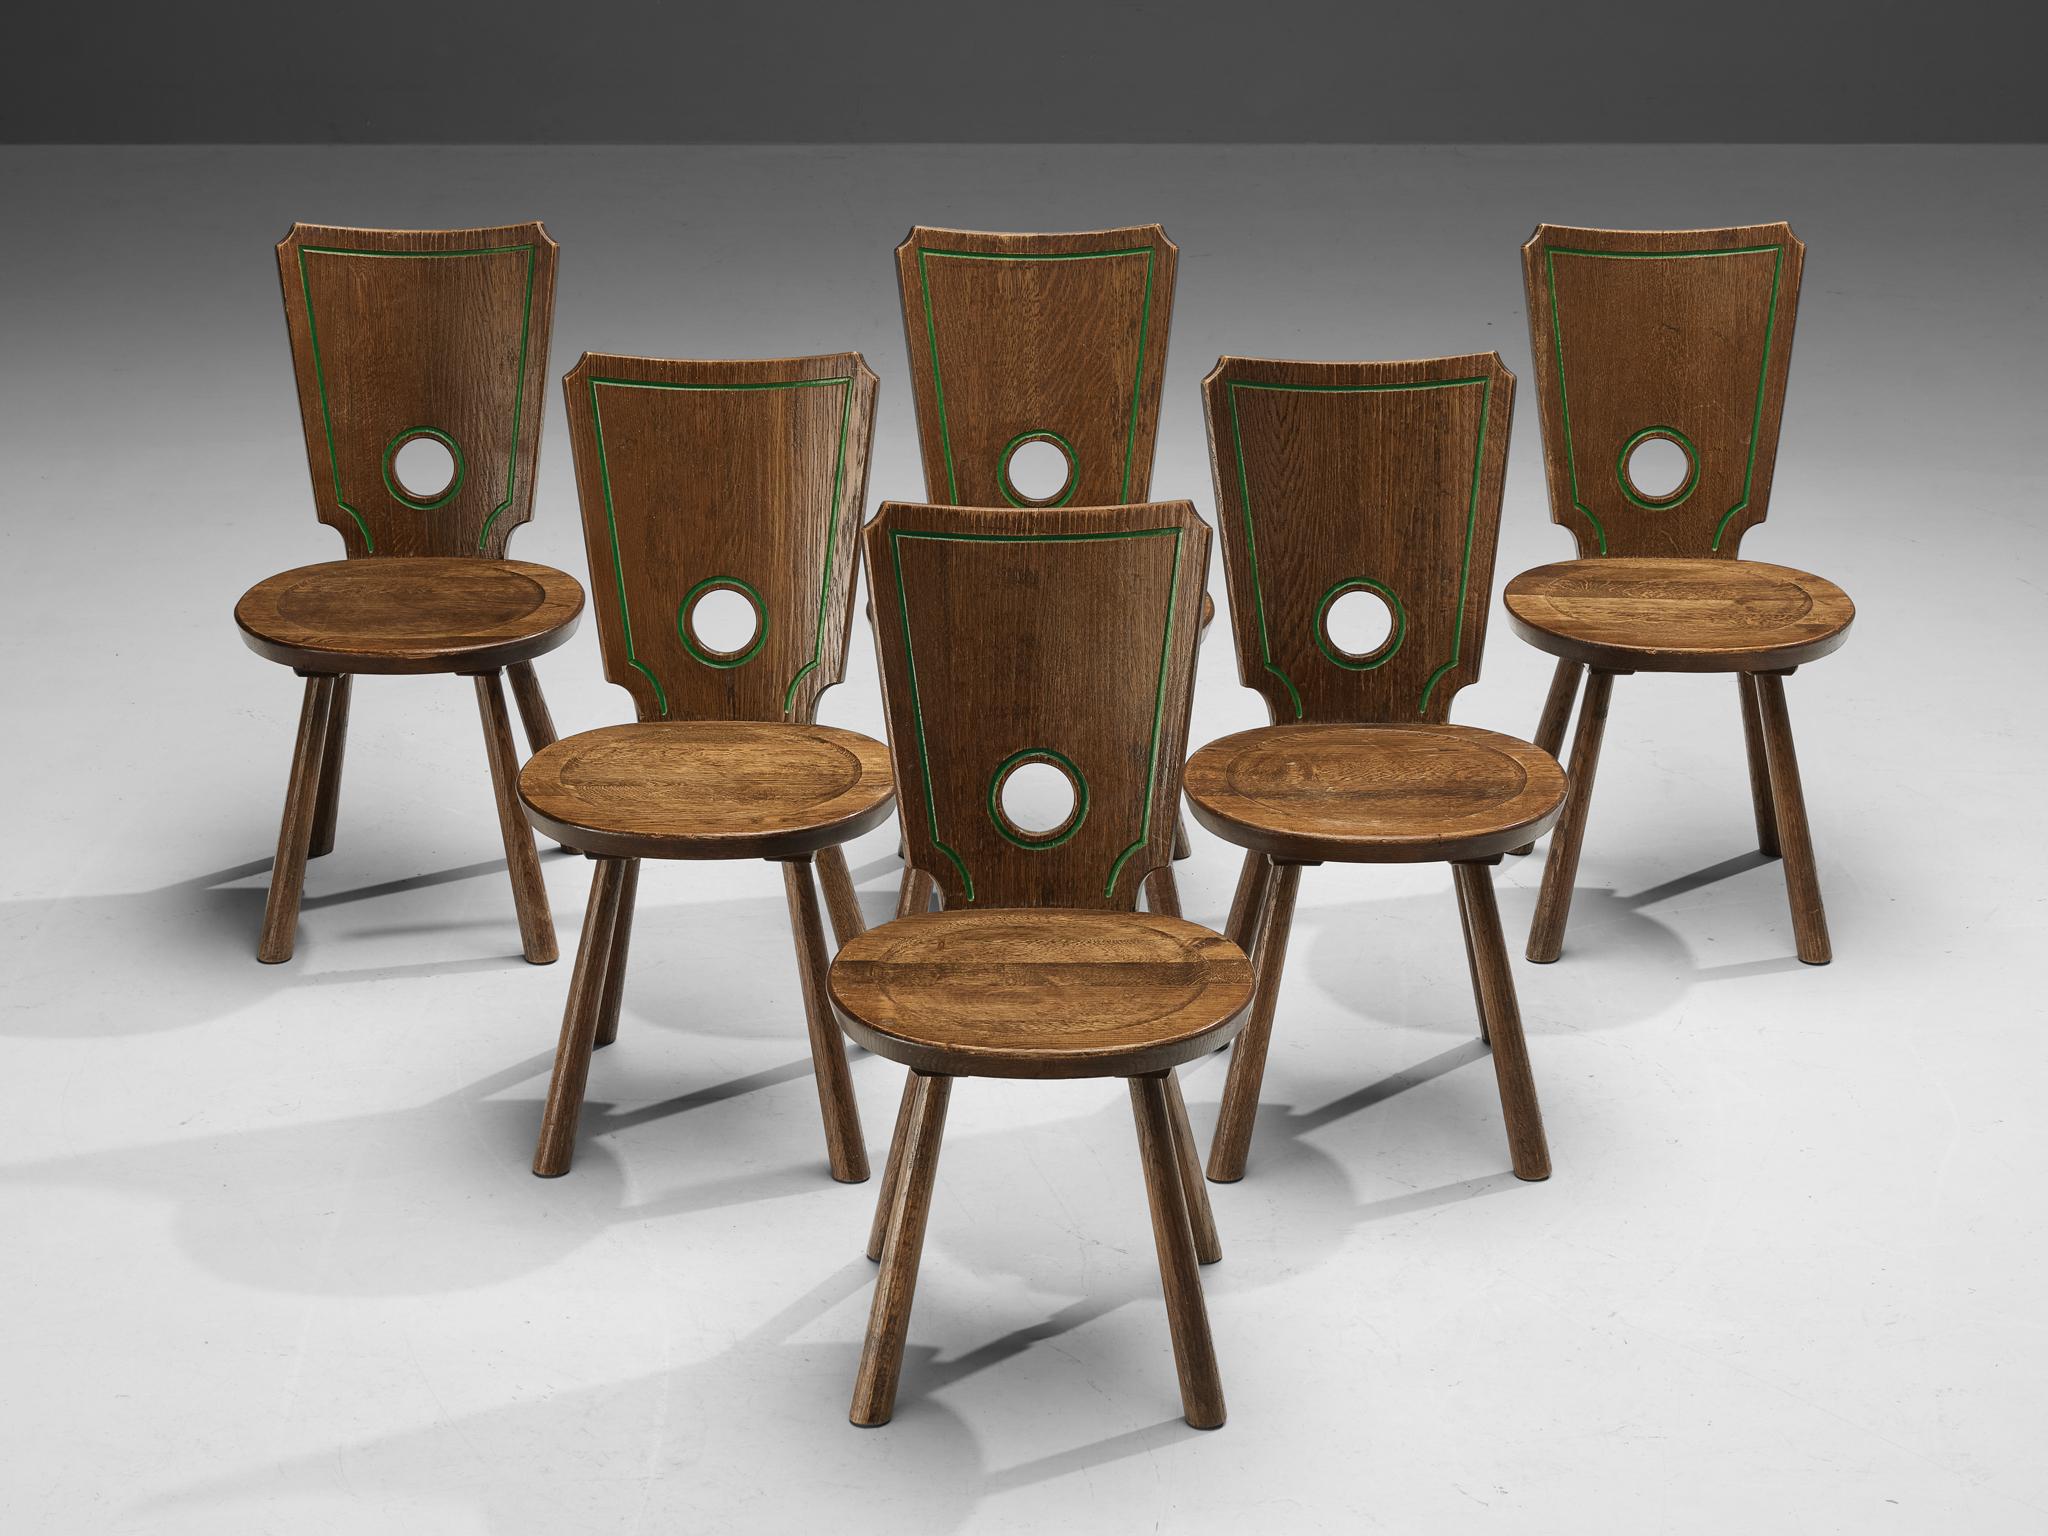 Ensemble de six chaises de salle à manger, chêne teinté, laiton, métal, France, années 1960

Ensemble caractéristique de six chaises de salle à manger françaises. Modérément décoré, l'espace arrondi du dossier joue un rôle visuel important en